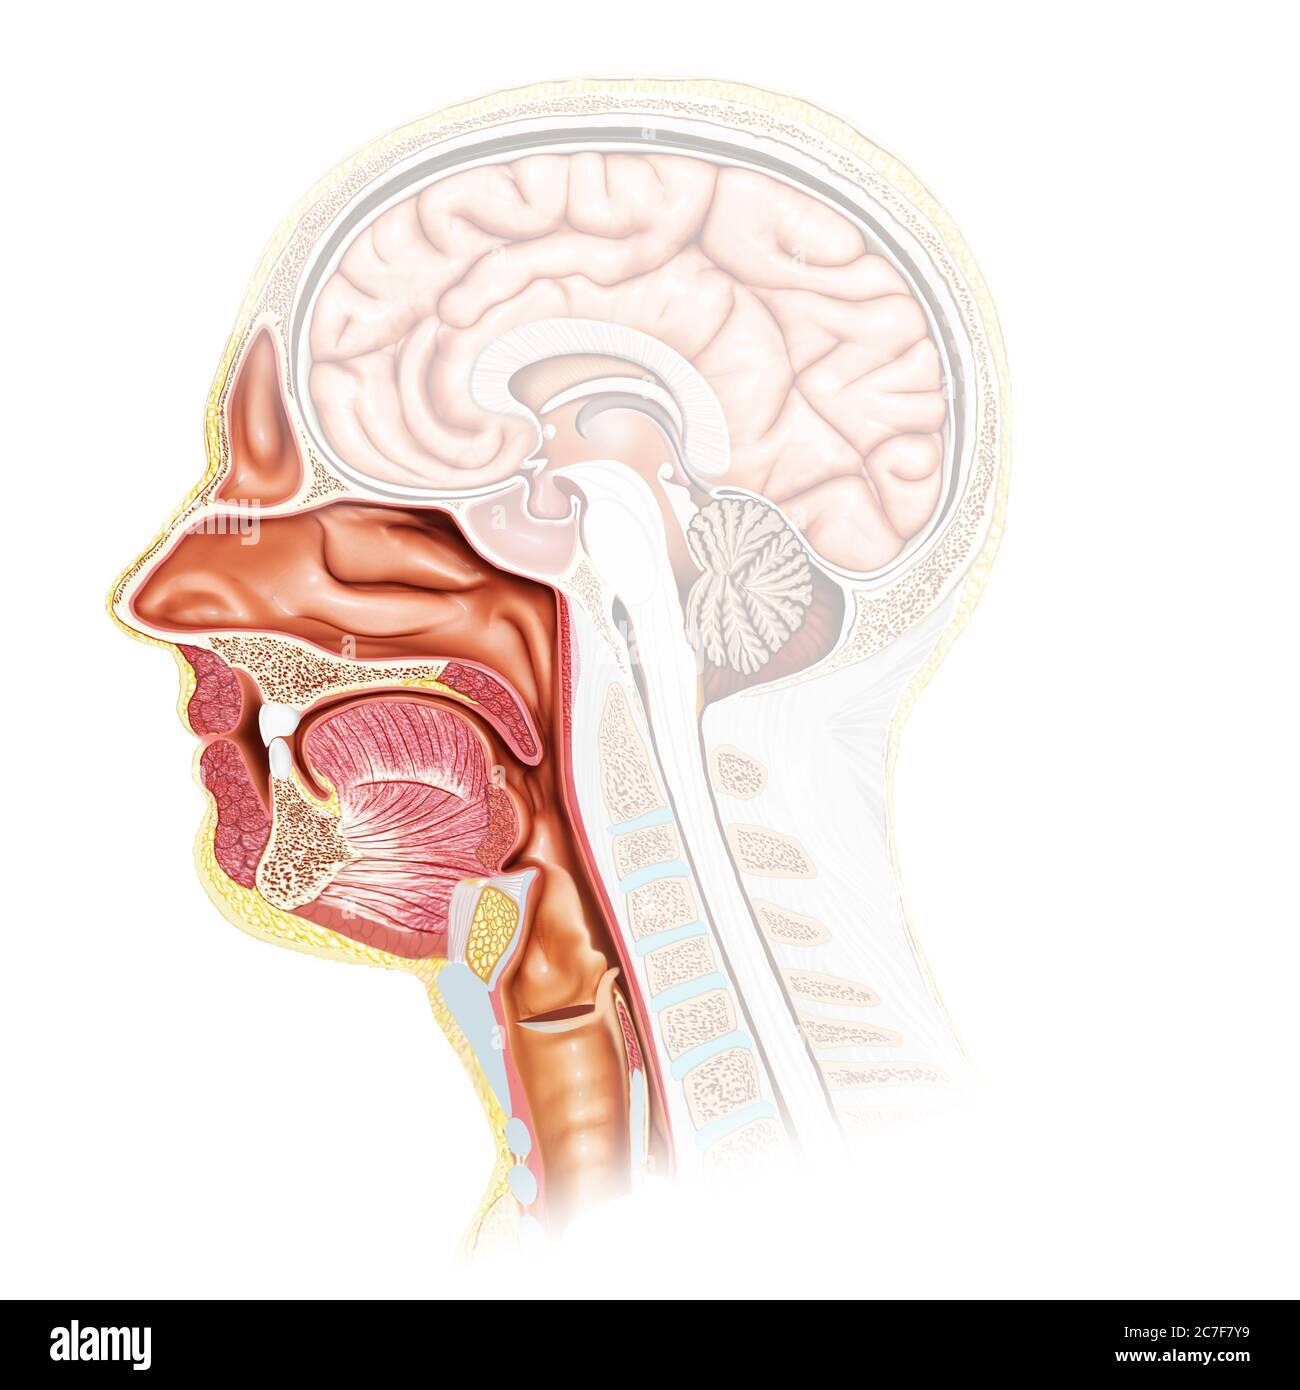 Rappresentazione 3d, rappresentazione accurata dal punto di vista medico della trachea maschile e dell'anatomia dell'esofago Foto Stock